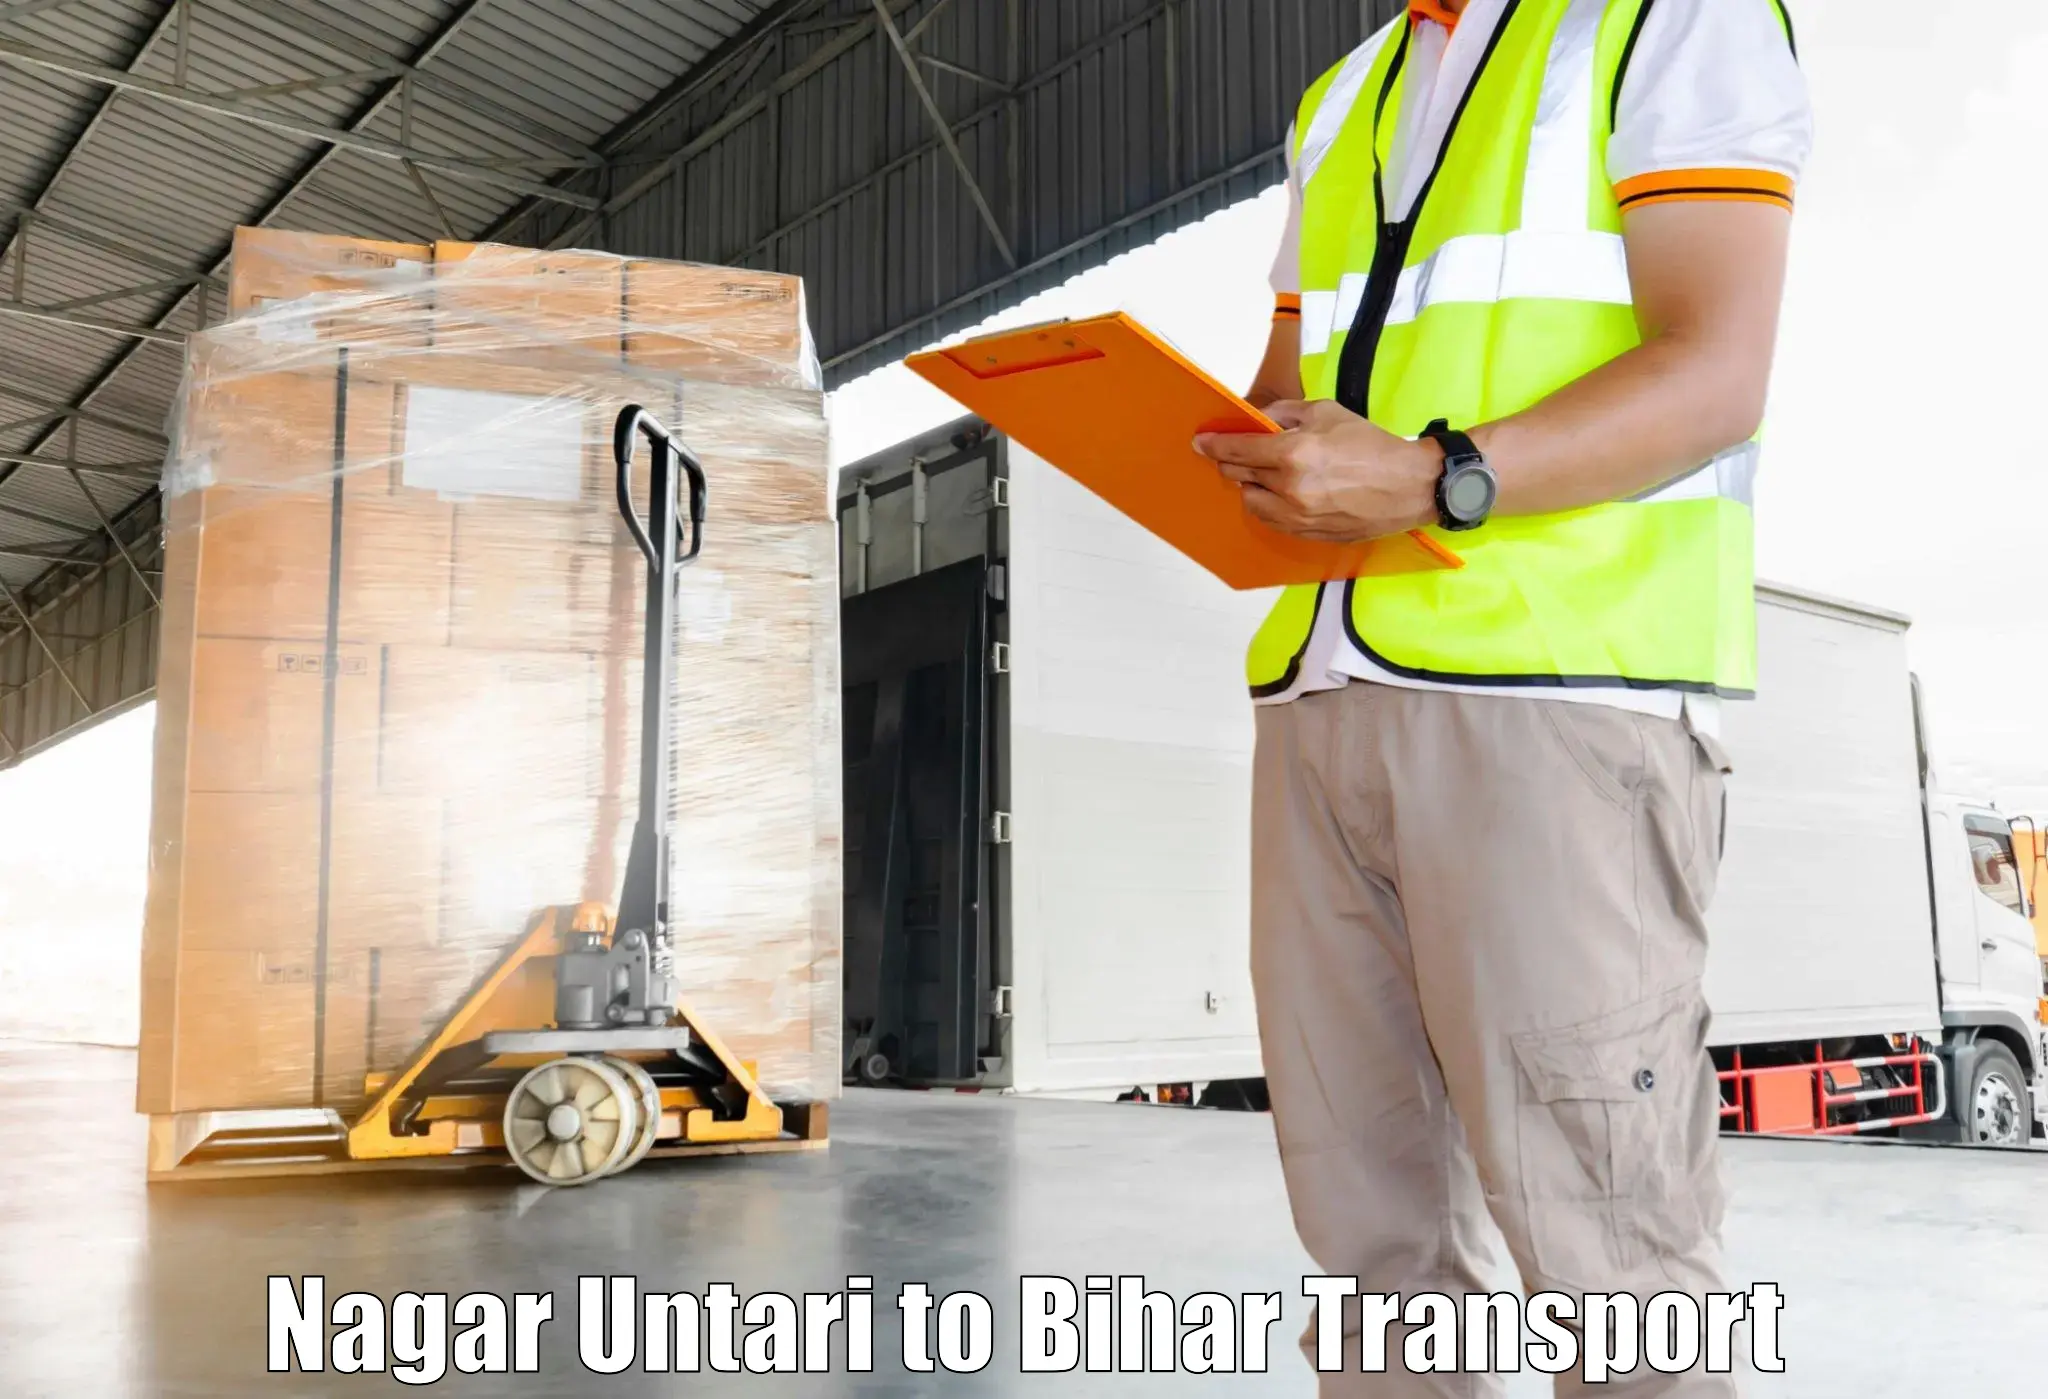 Road transport online services Nagar Untari to Maheshkhunt